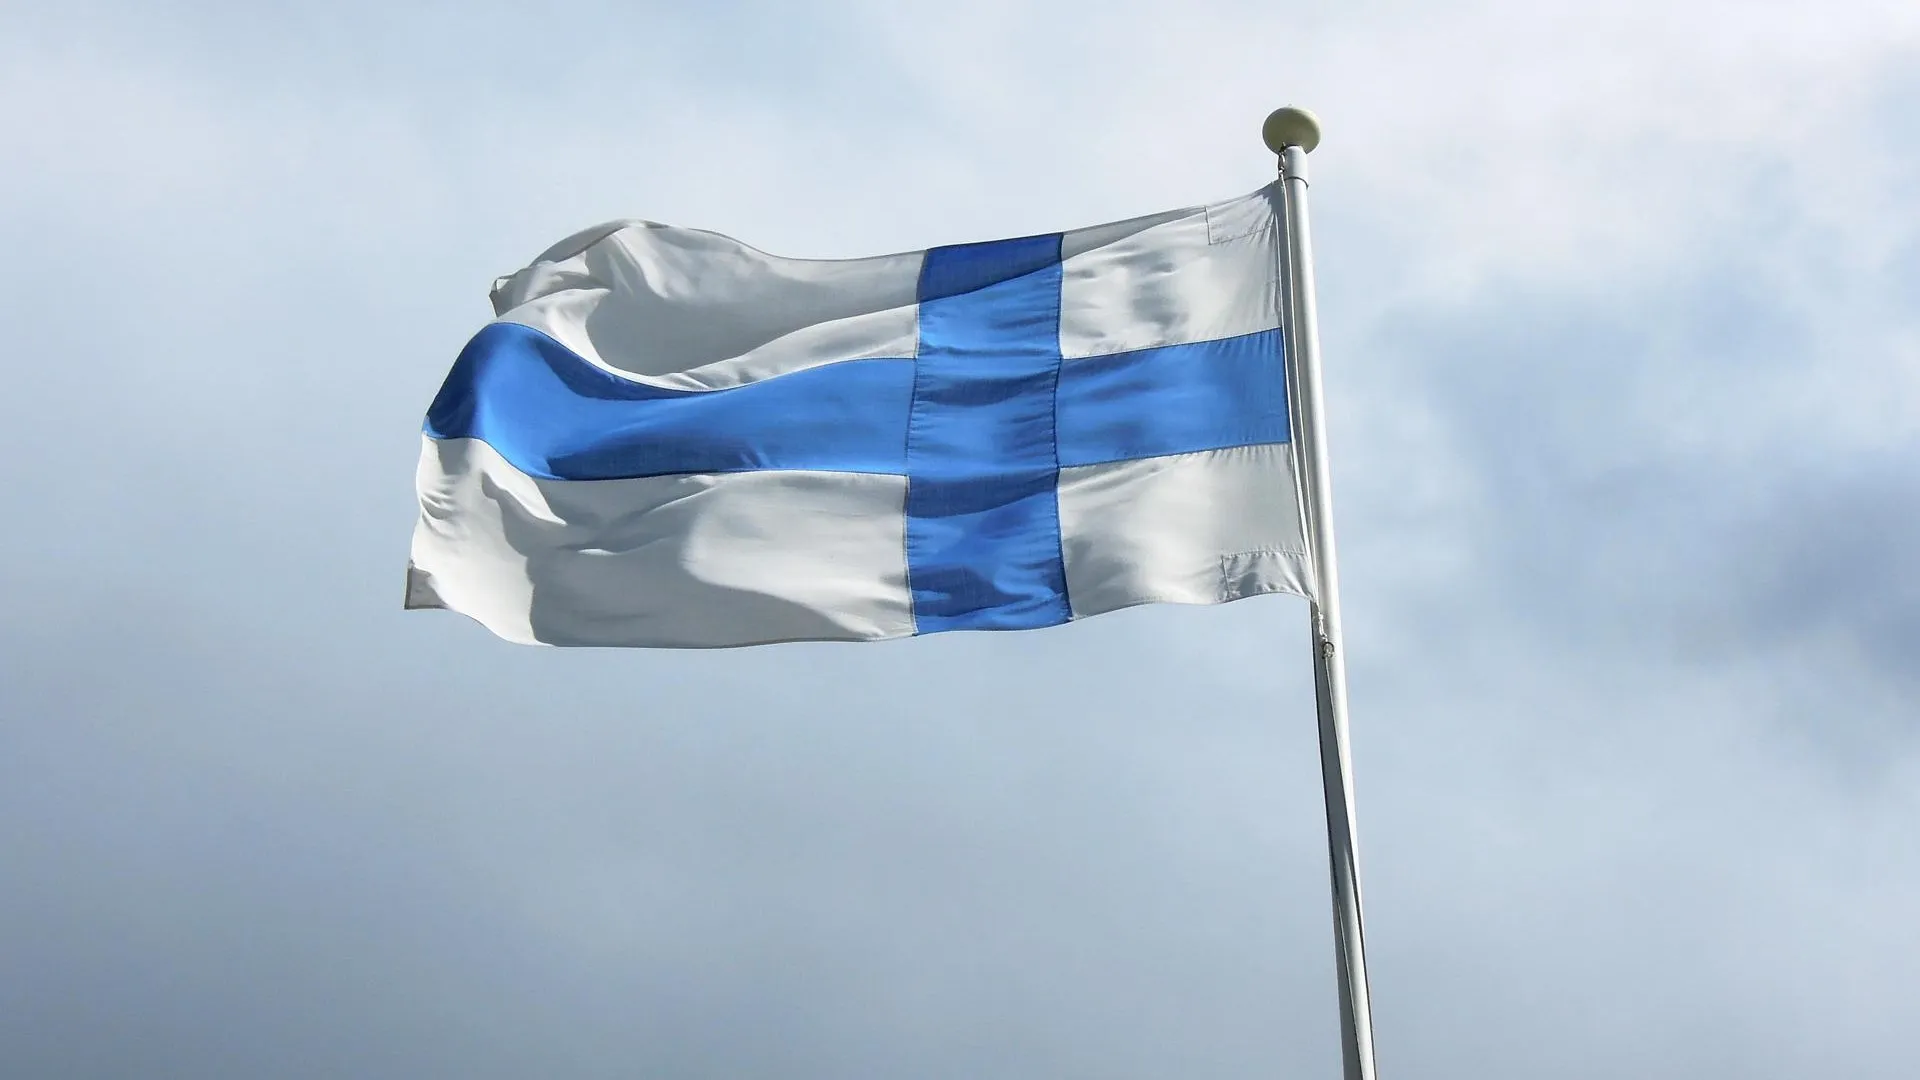 МИД Финляндии требует объяснения после нарушения воздушного пространства самолетом из РФ